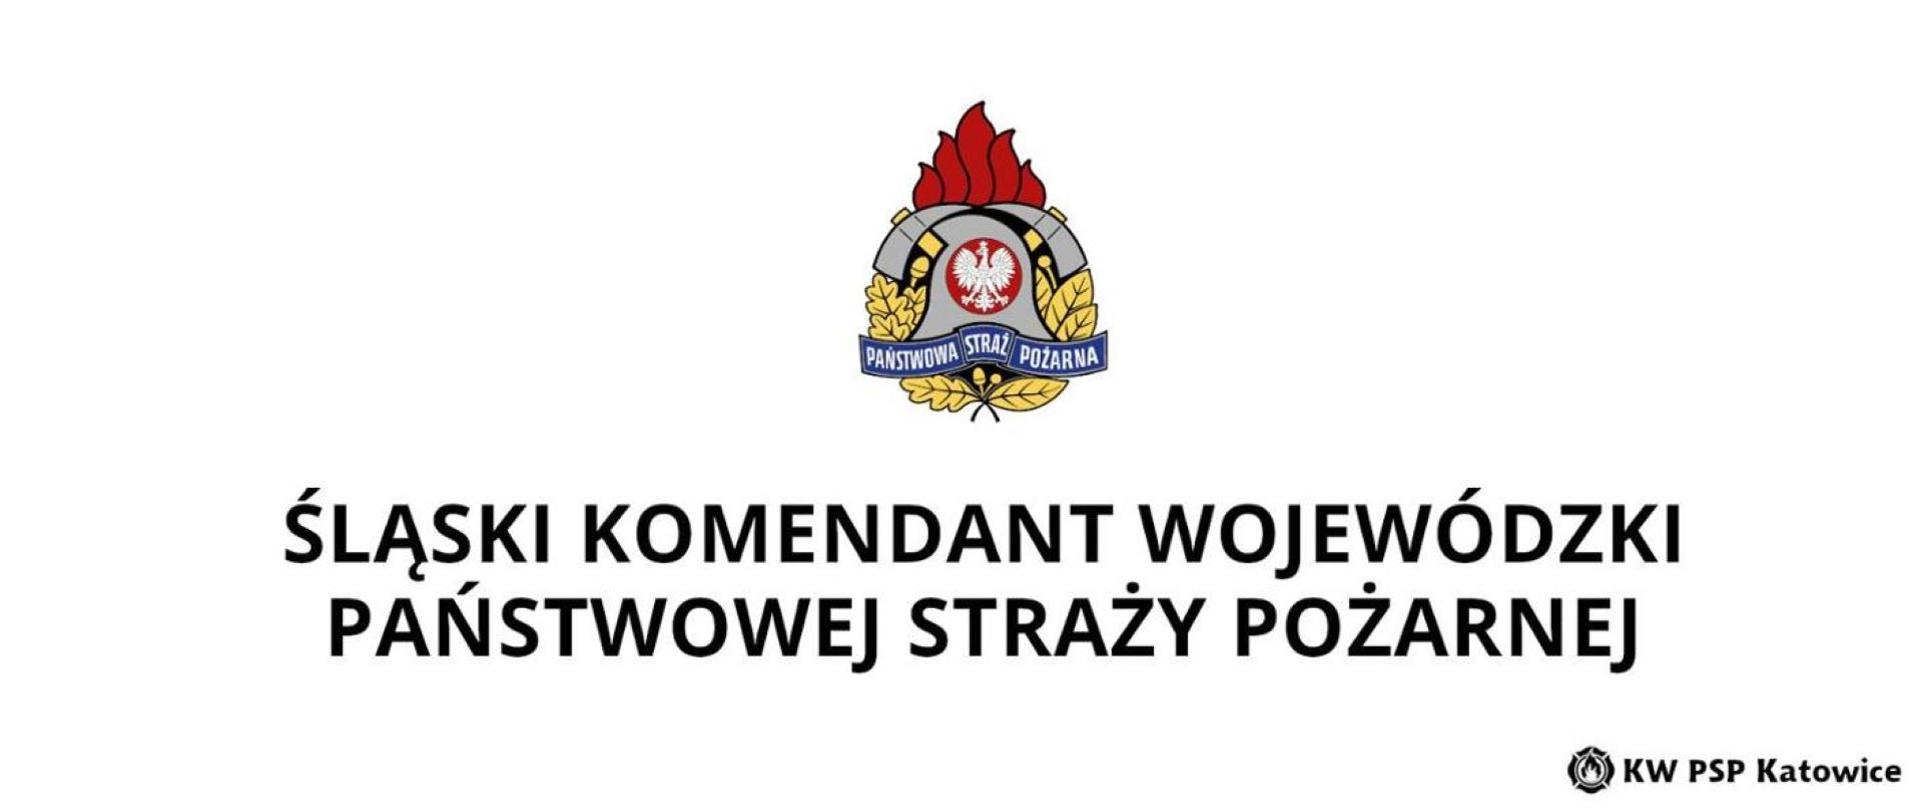 Zdjęcie przedstawia logo Śląskiego Komendanta Wojewódzkiego PSP w Katowicach.